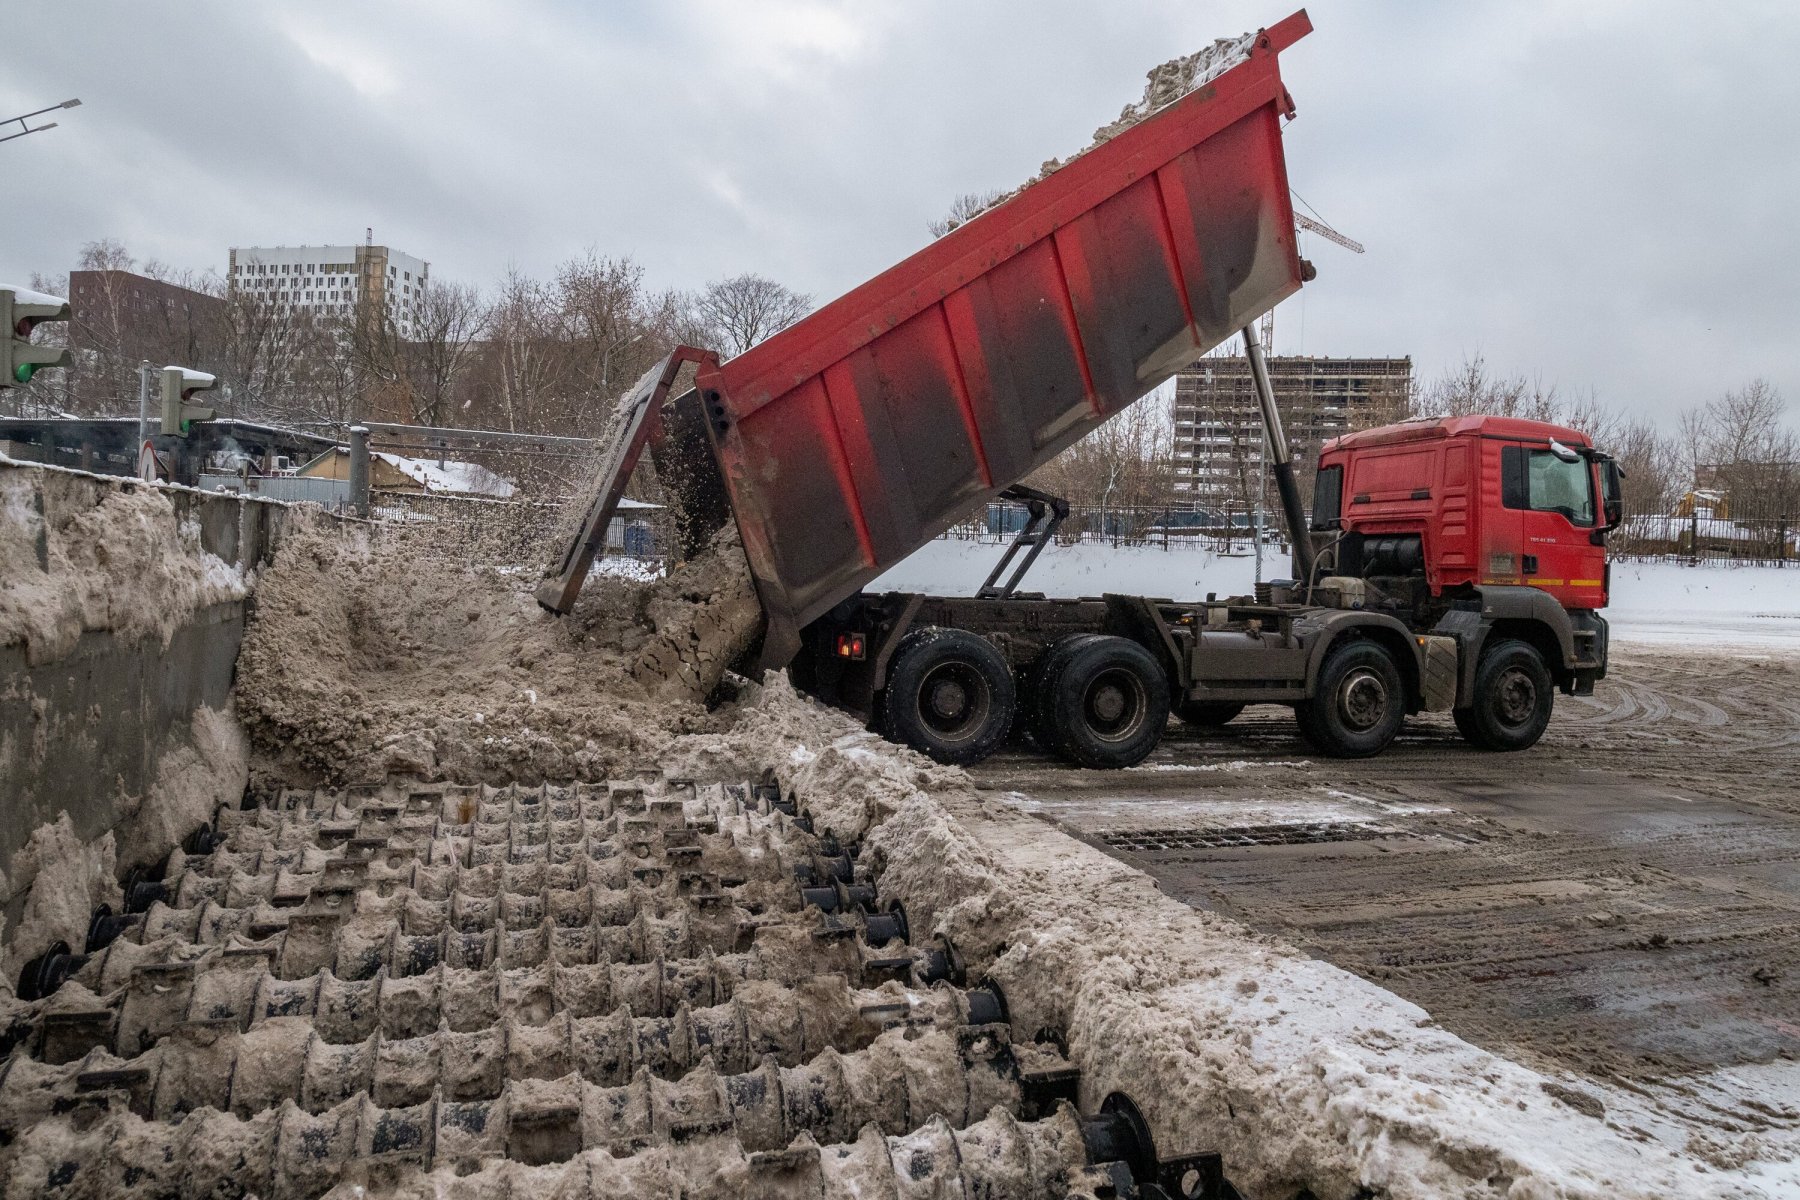 Снегоплавильни Петербурга справляются с утилизацией снега хуже, чем в прошлом году